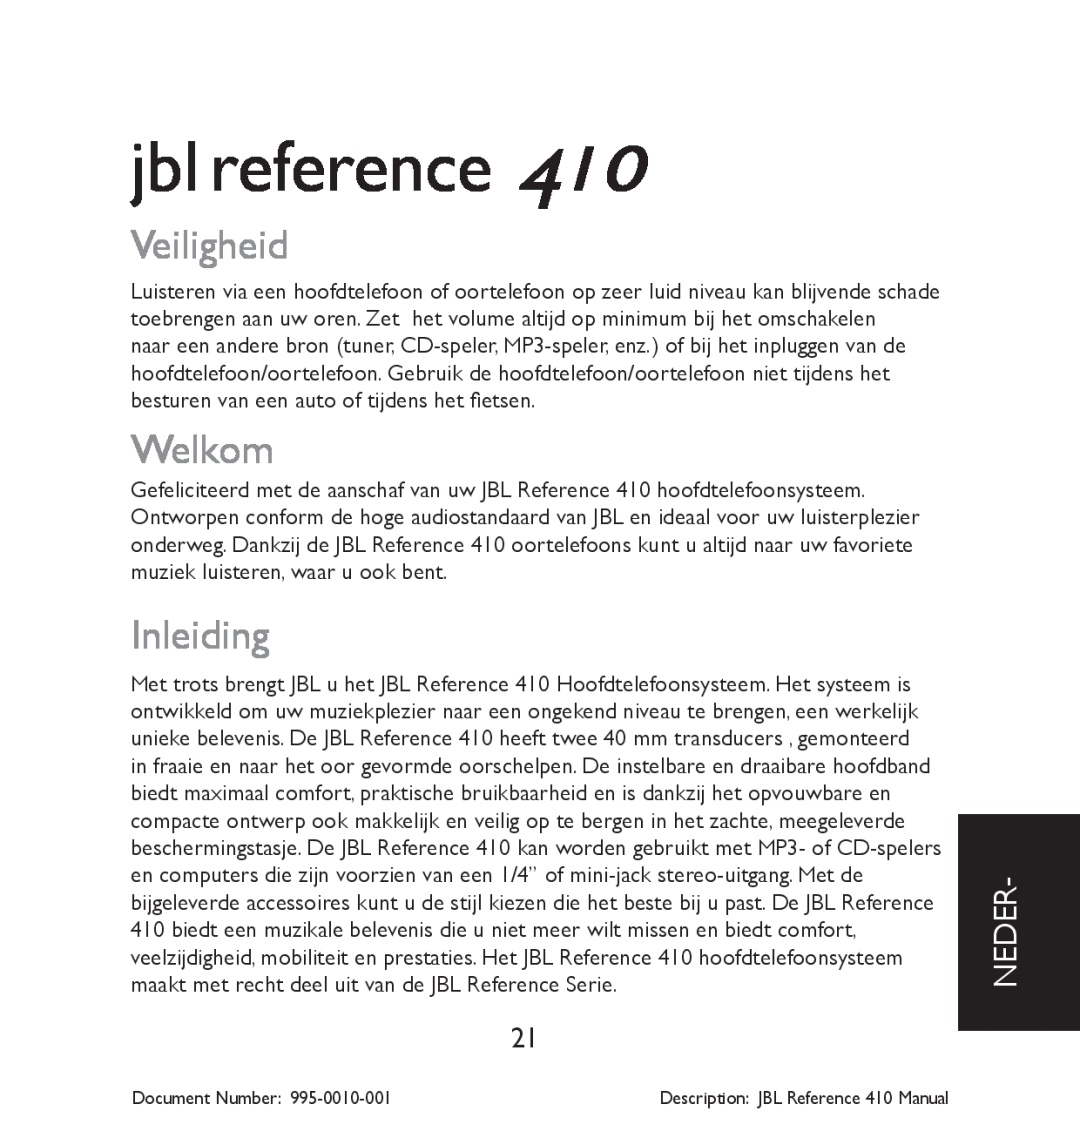 JBL 410 manual Veiligheid, Welkom, Inleiding, Neder, jbl reference 